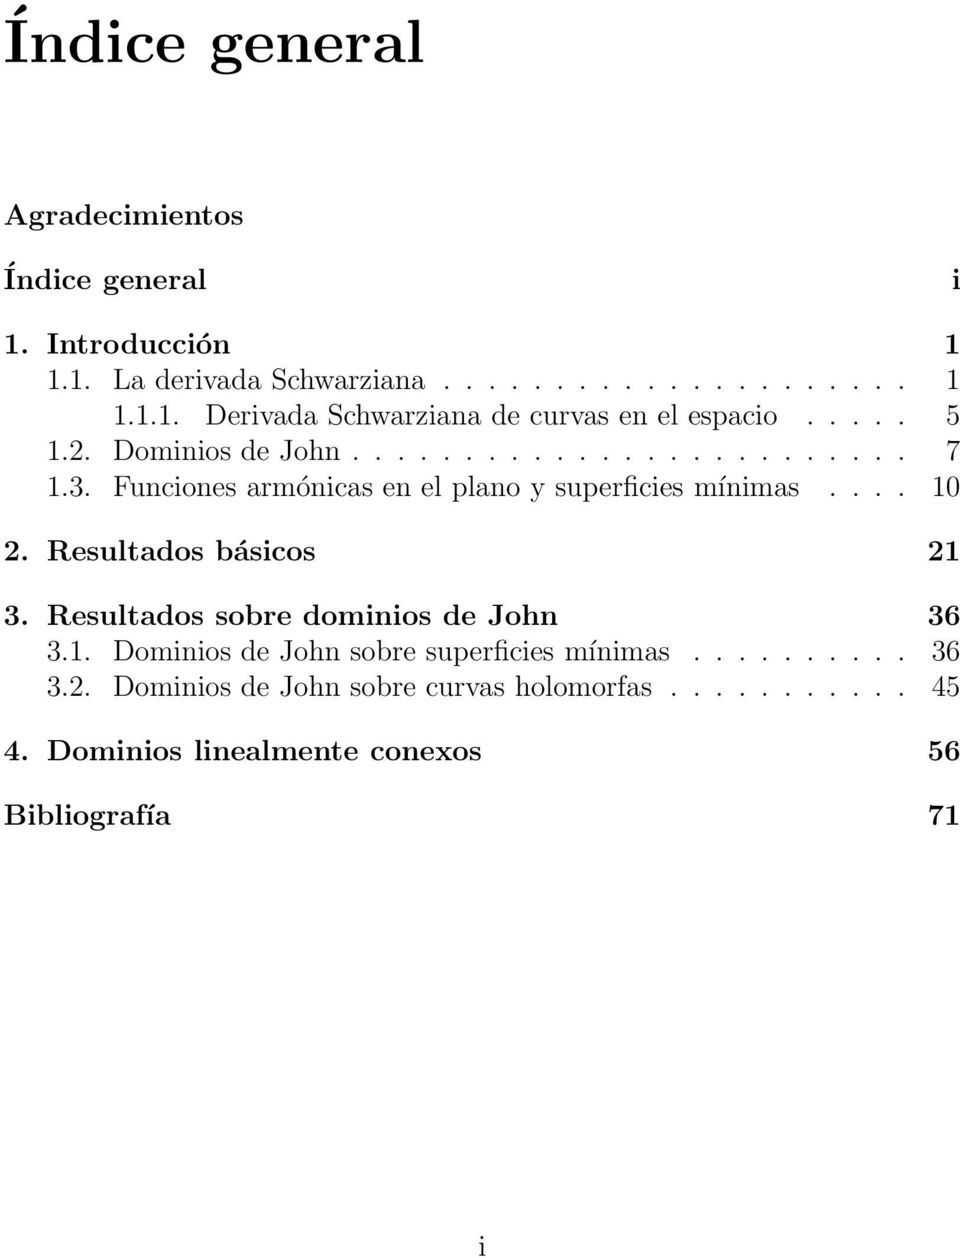 Resultados básicos 21 3. Resultados sobre dominios de John 36 3.1. Dominios de John sobre superficies mínimas.......... 36 3.2. Dominios de John sobre curvas holomorfas.